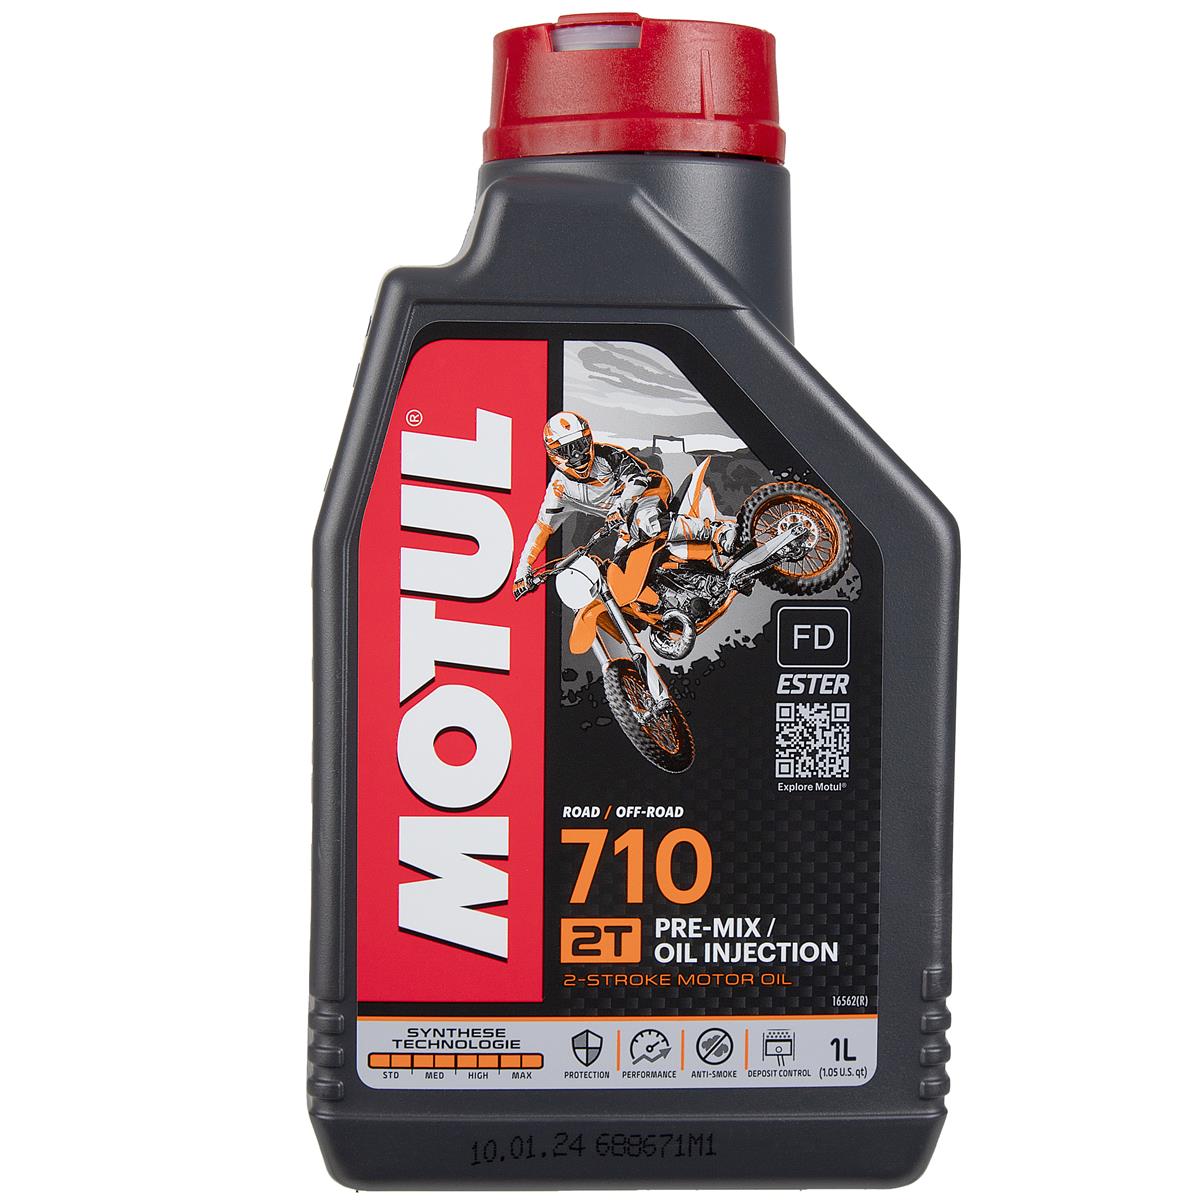 Motul Engine Oil 710 2T 2-Stroke, 1 Liter